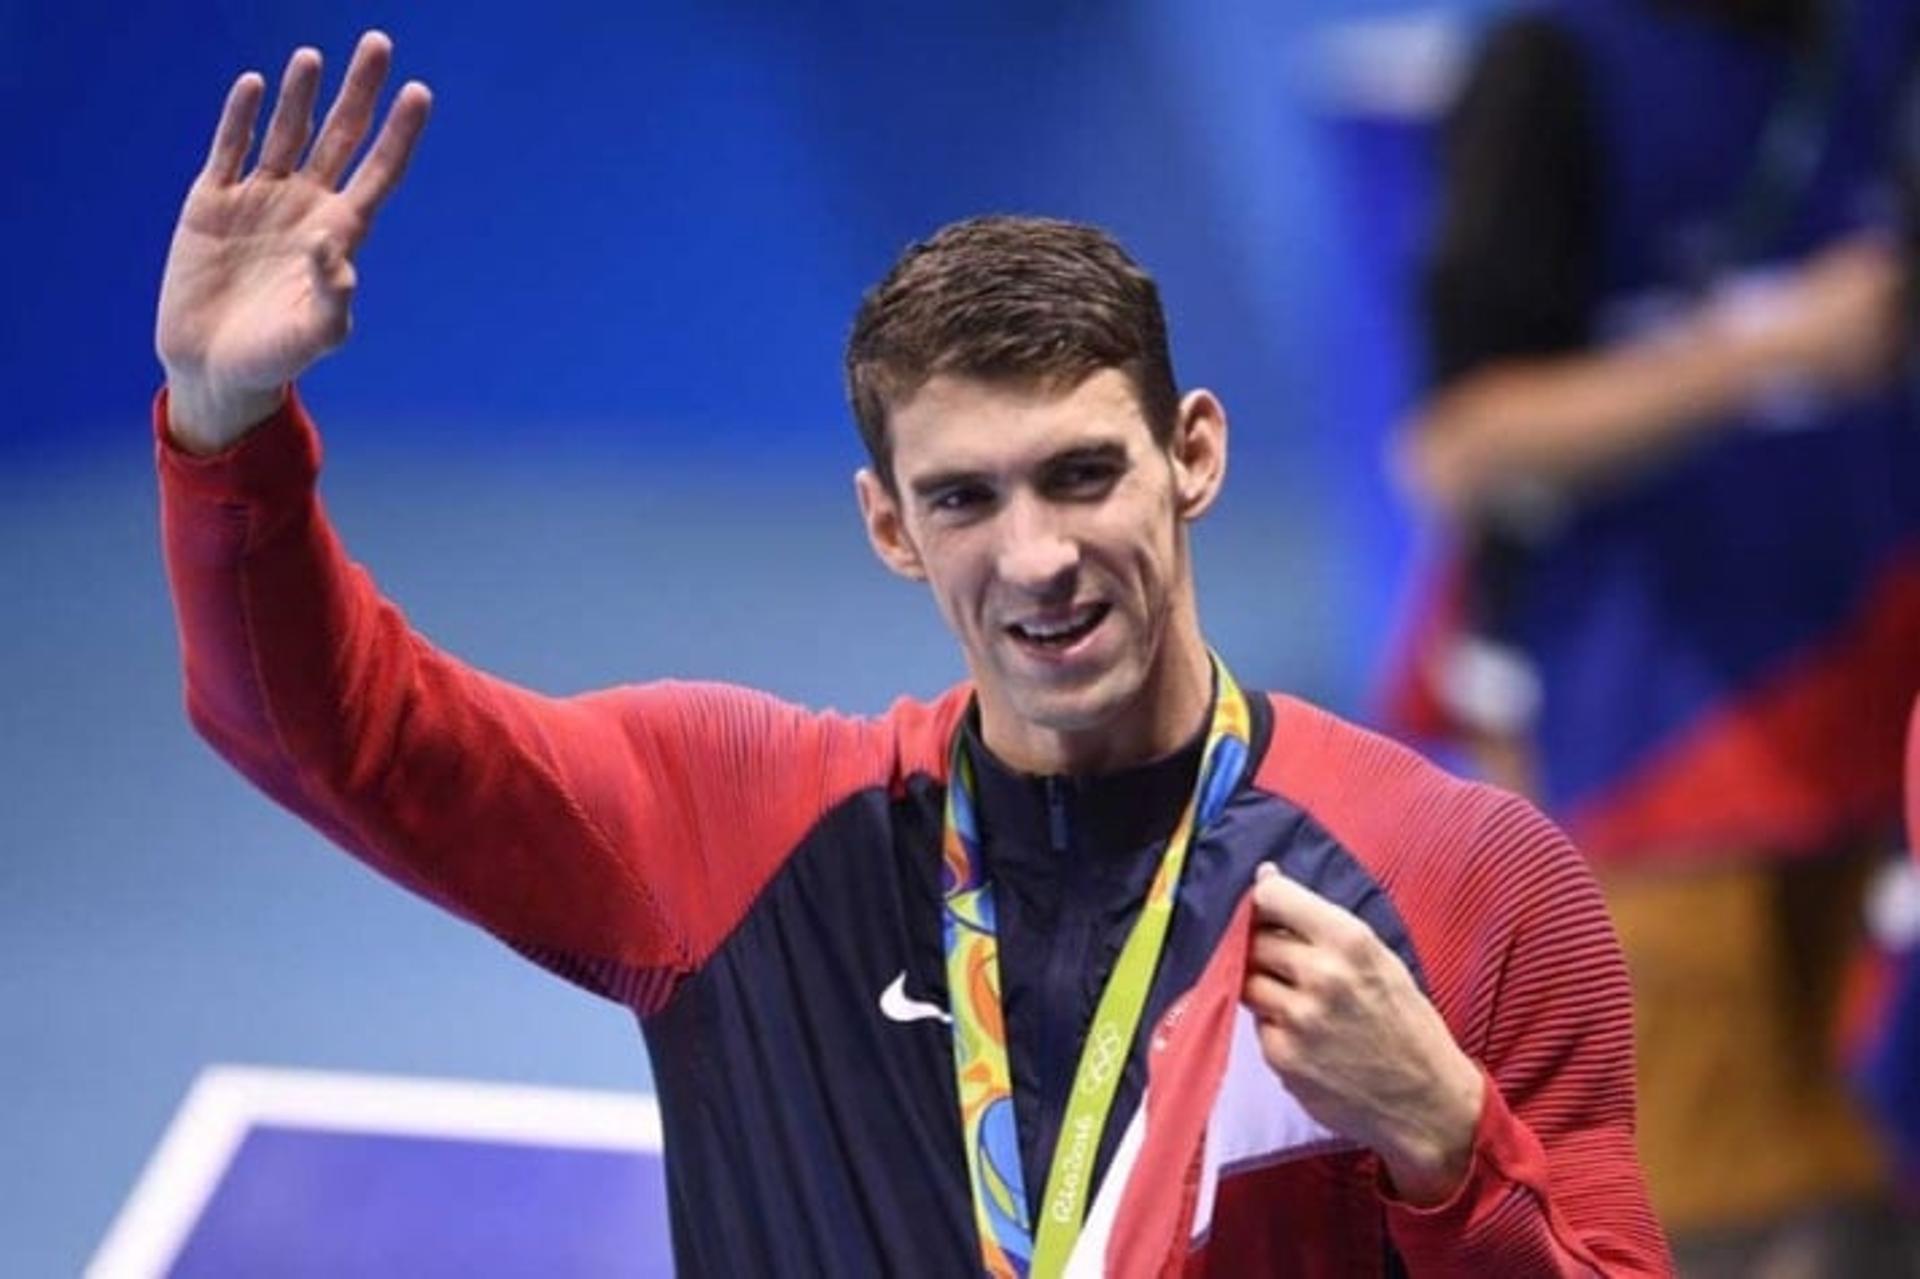 Michael Phelps com algumas de suas tantas medalhas olímpicas (Foto: AFP)